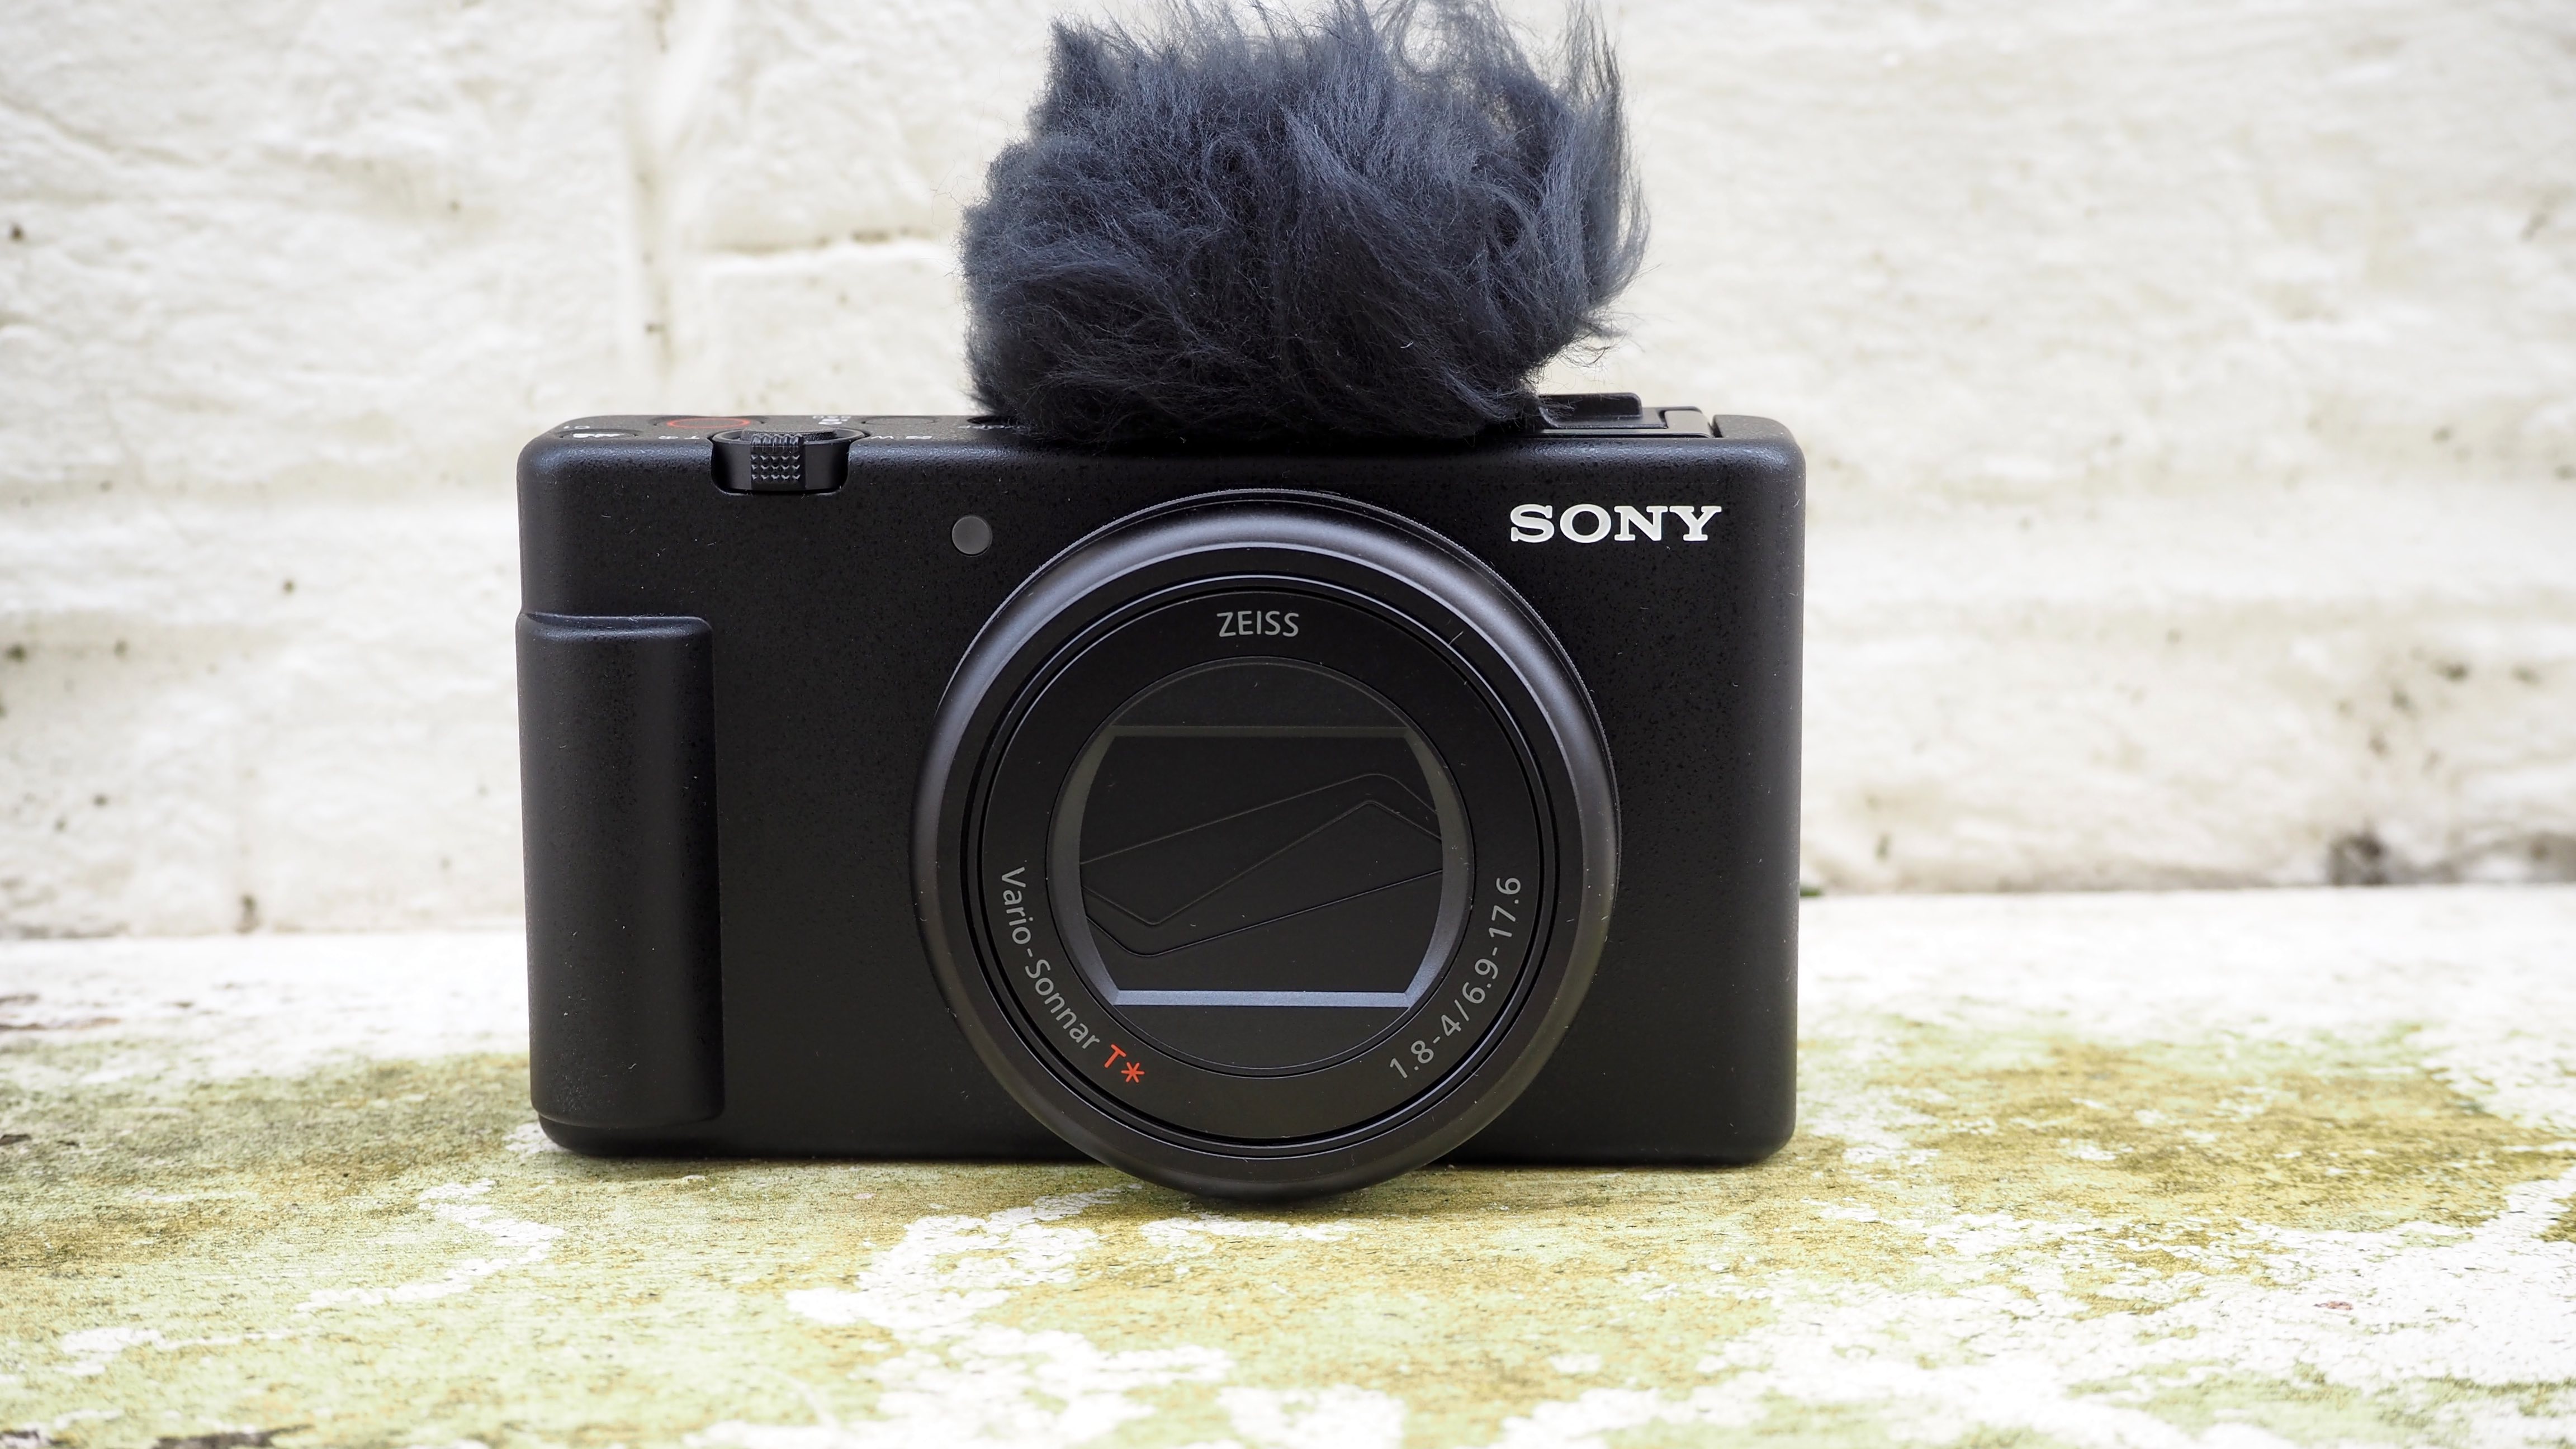 Sony Камера ZV-1 II снаружи на стене с ветровым стеклом, прикрепленным к микрофону